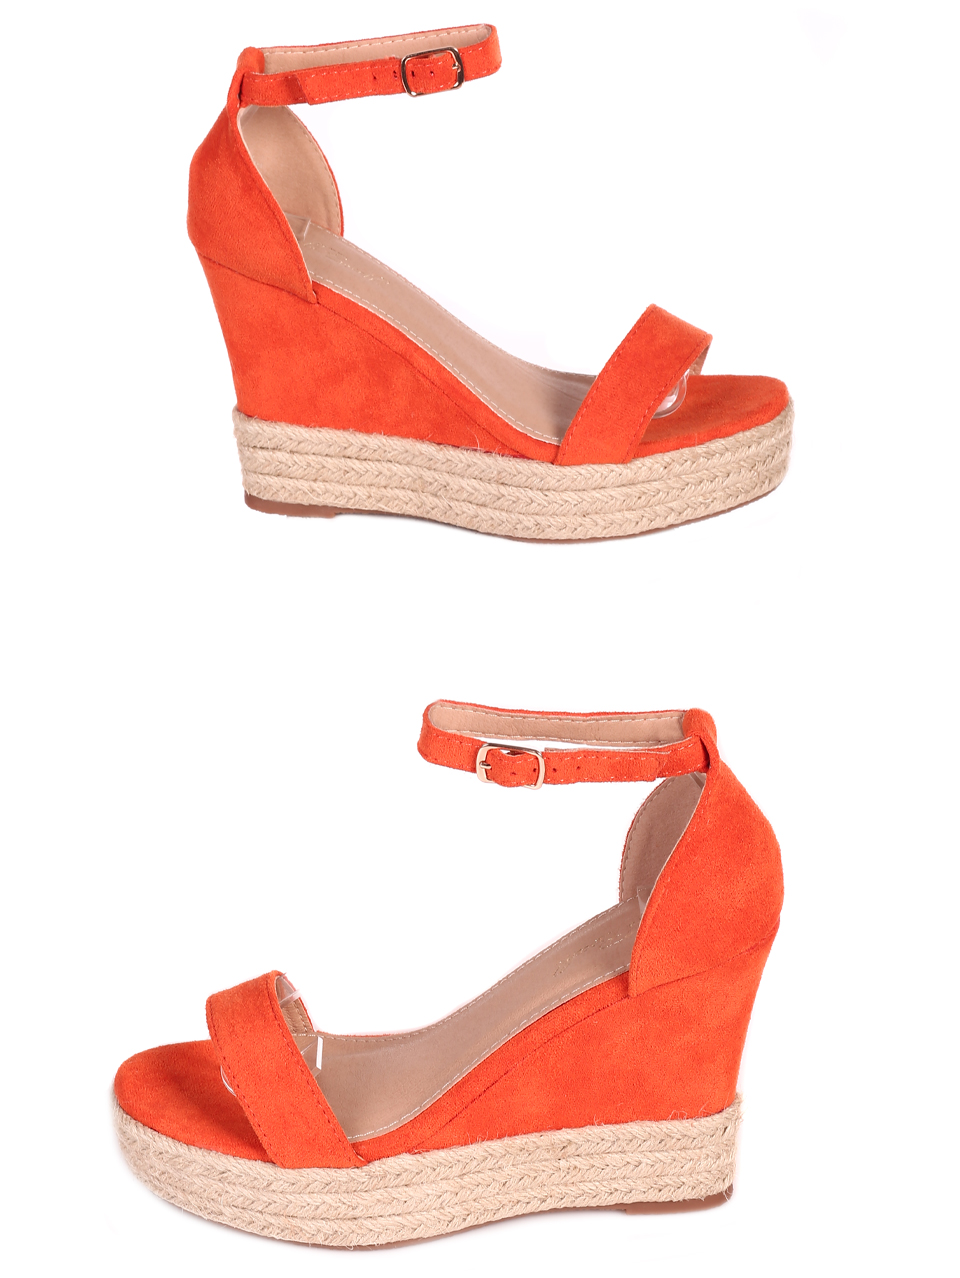 Елегантни дамски сандали на платформа в оранжево 4U-23264 orange